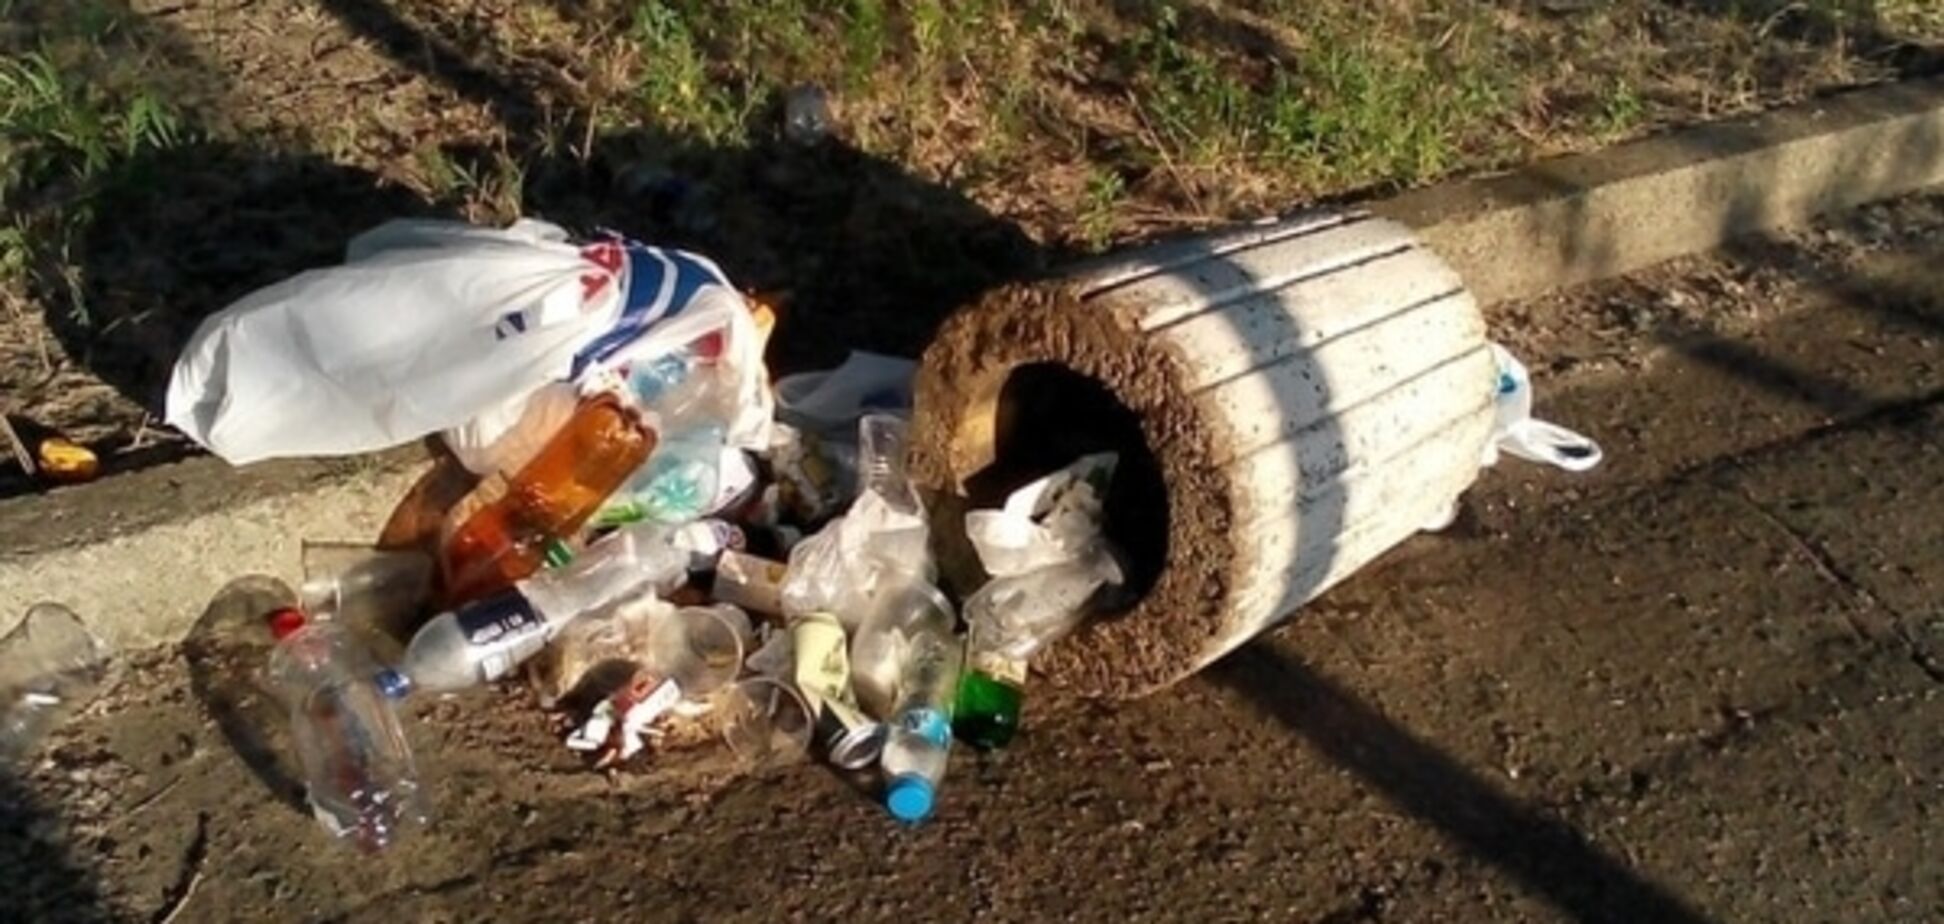 Днепр 'культурный': во время отдыха горожане забросали мусором пляжи. Фото